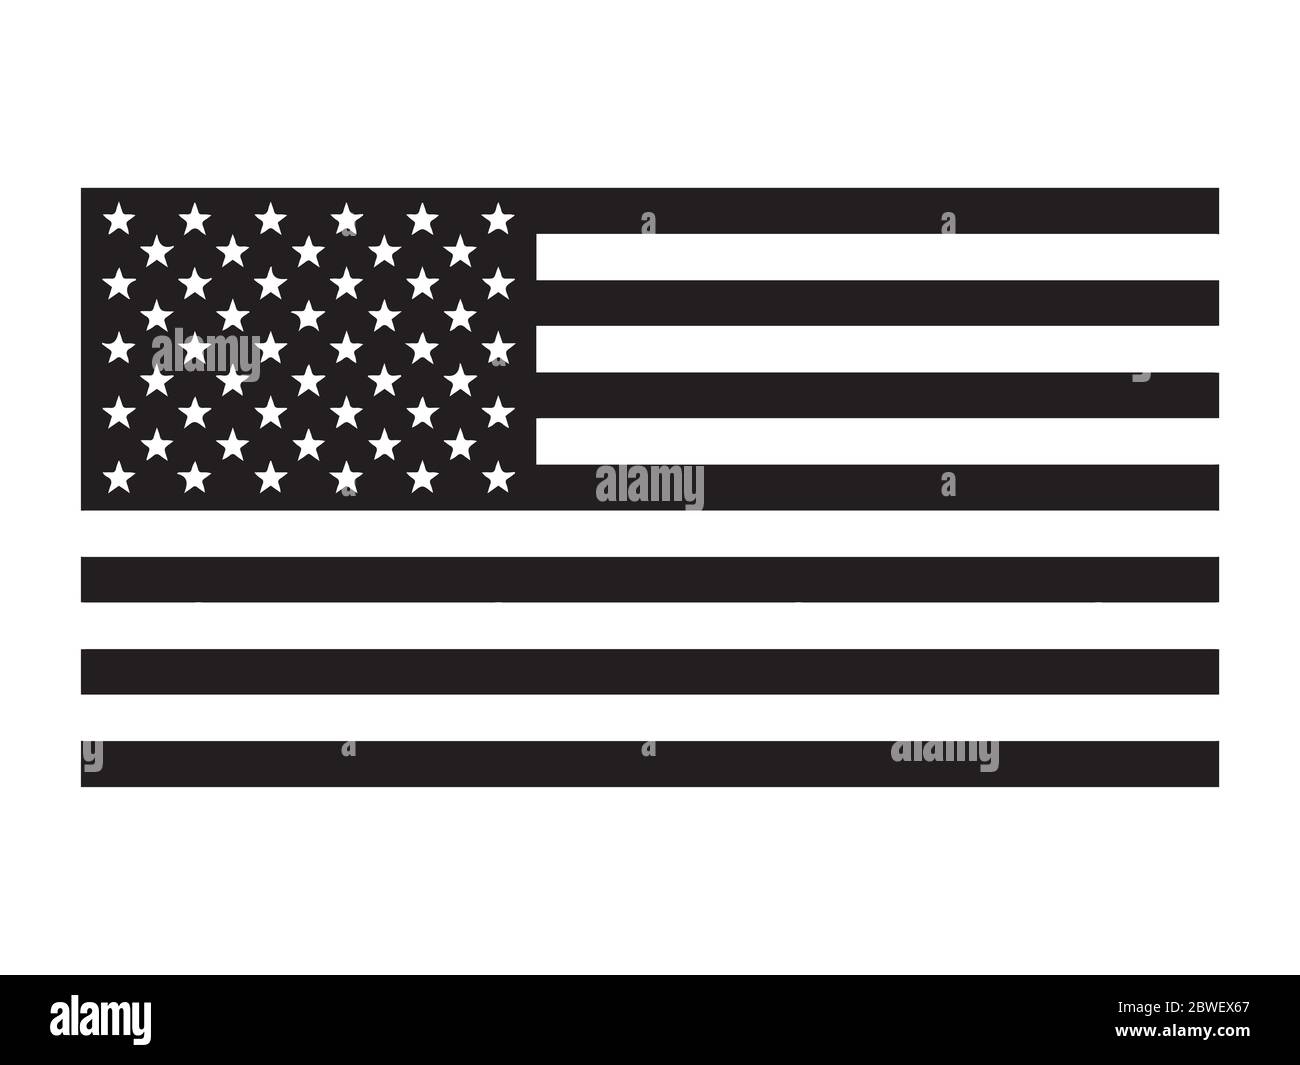 Flagge der Vereinigten Staaten von Amerika. Piktogramm mit US-amerikanischer Flagge. Das Star-Spangled Banner. EPS-Vektor Stock Vektor